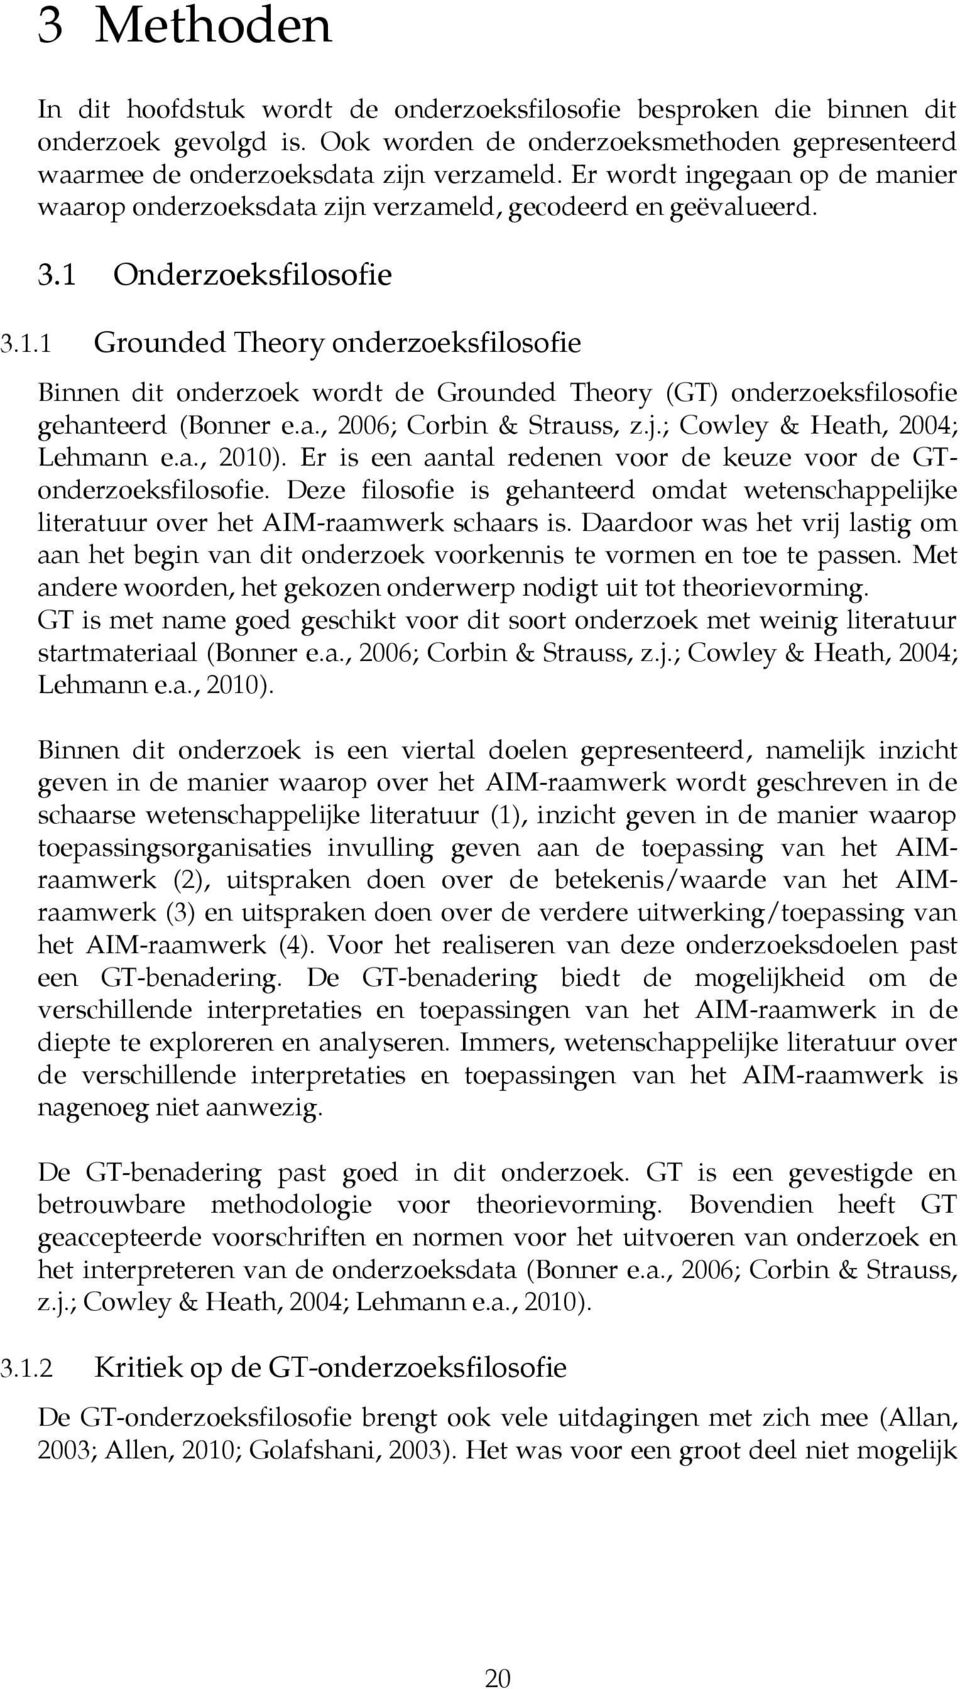 Onderzoeksfilosofie 3.1.1 Grounded Theory onderzoeksfilosofie Binnen dit onderzoek wordt de Grounded Theory (GT) onderzoeksfilosofie gehanteerd (Bonner e.a., 2006; Corbin & Strauss, z.j.